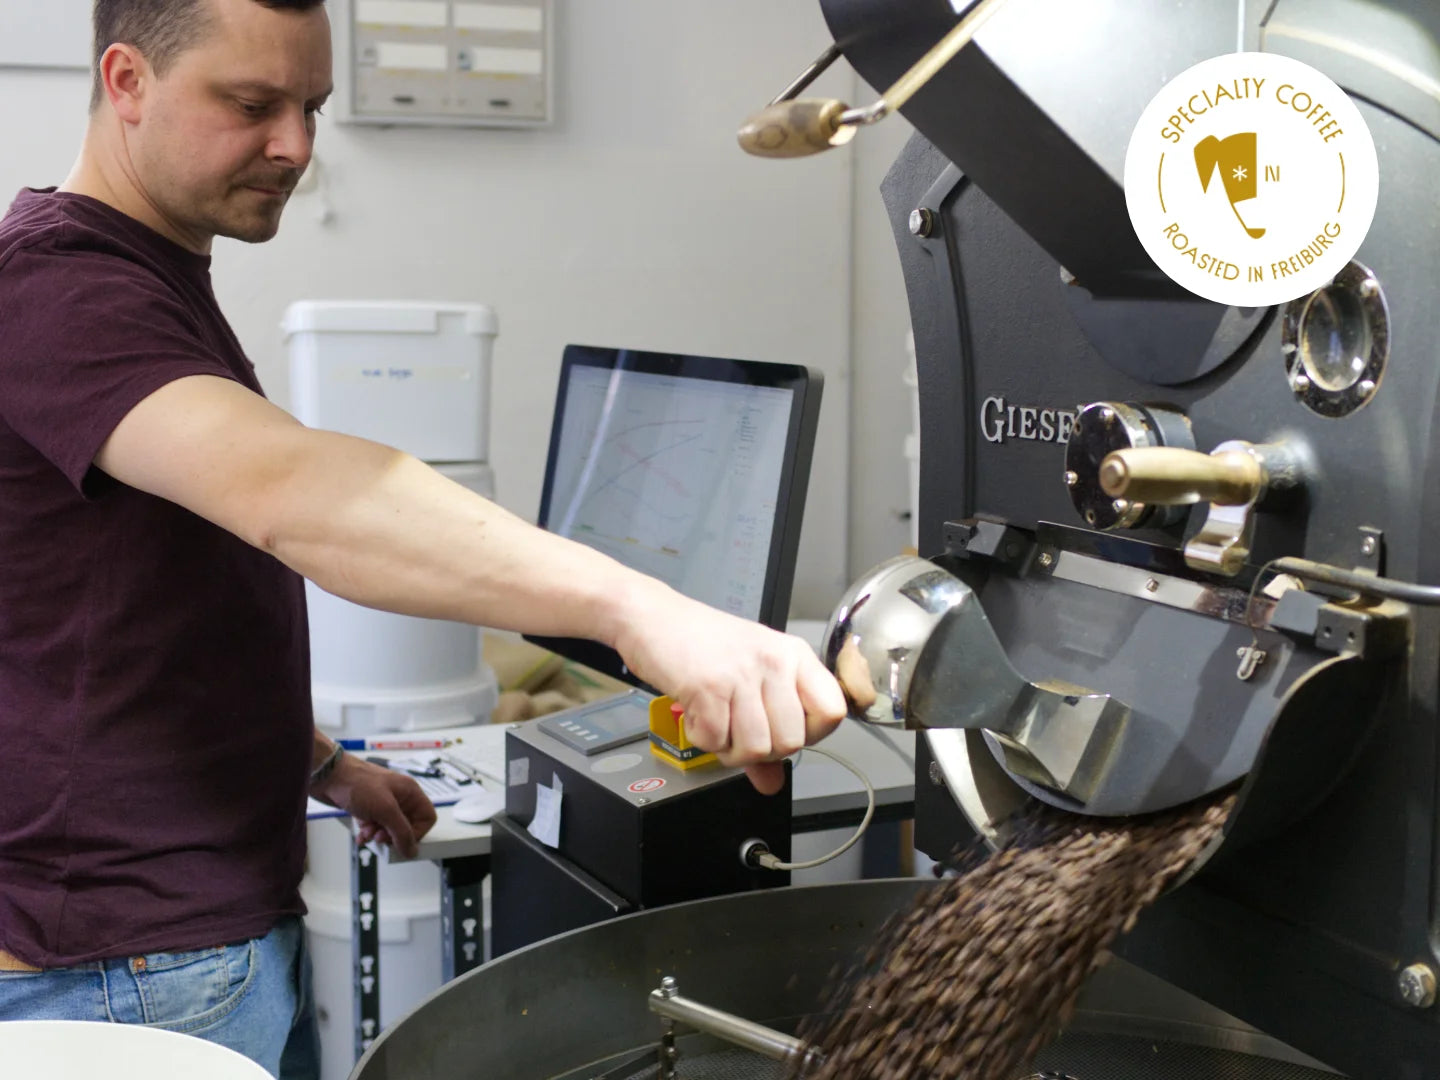 Titelbild zum Blogartikel "Wie wird Kaffee geröstet?". Auf dem Bild ist Philip an der Röstmaschine Giesen W15 zu sehen. Er öffnet gerade die Ablassklappe, um frischen Röstkaffee in die Abkühlschale zu geben. In weiß liest man "Kaffee rösten".